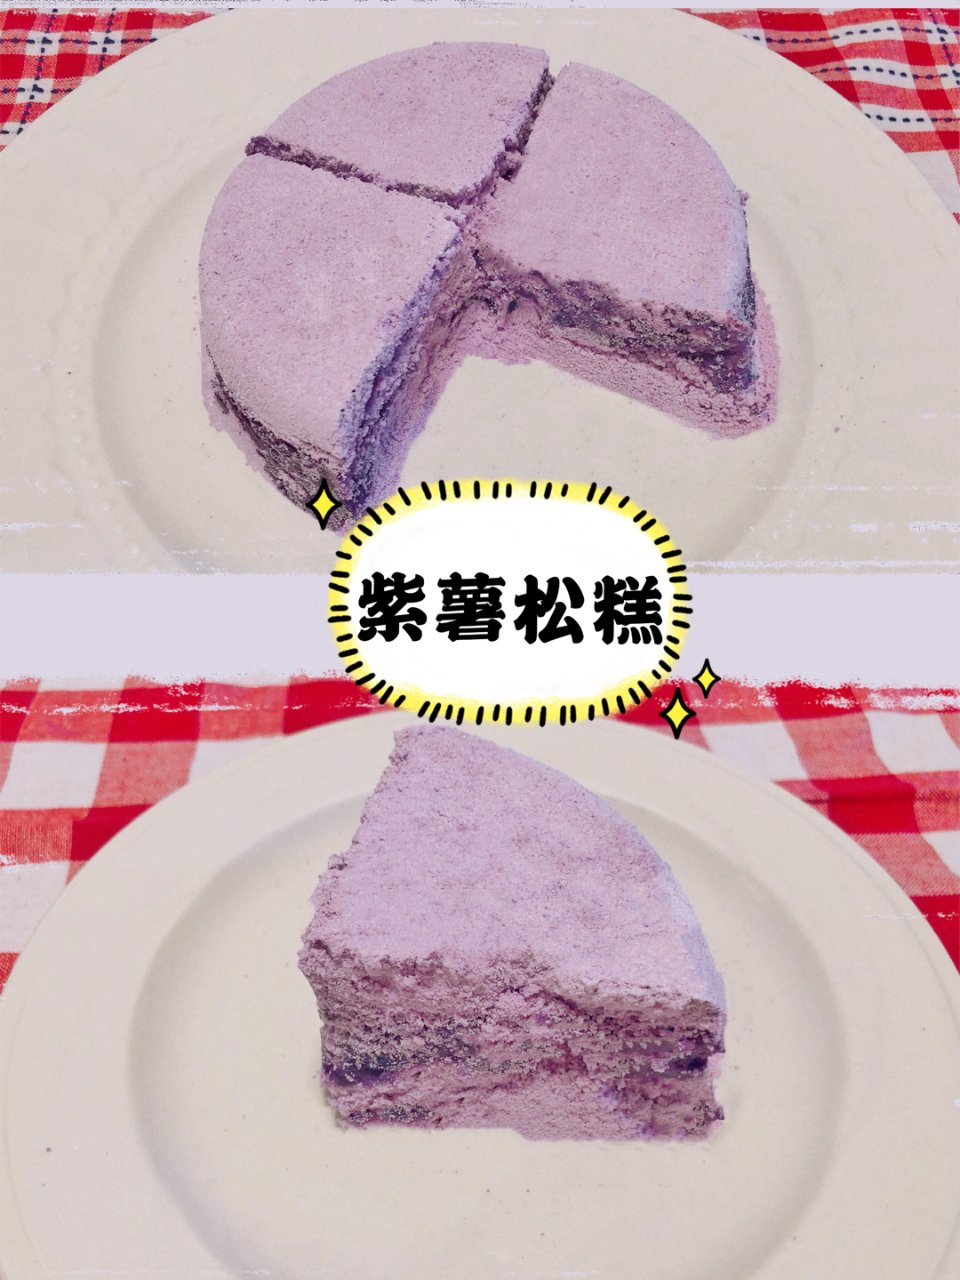 香甜不腻的紫薯松糕 | 这颜色也太治愈了...